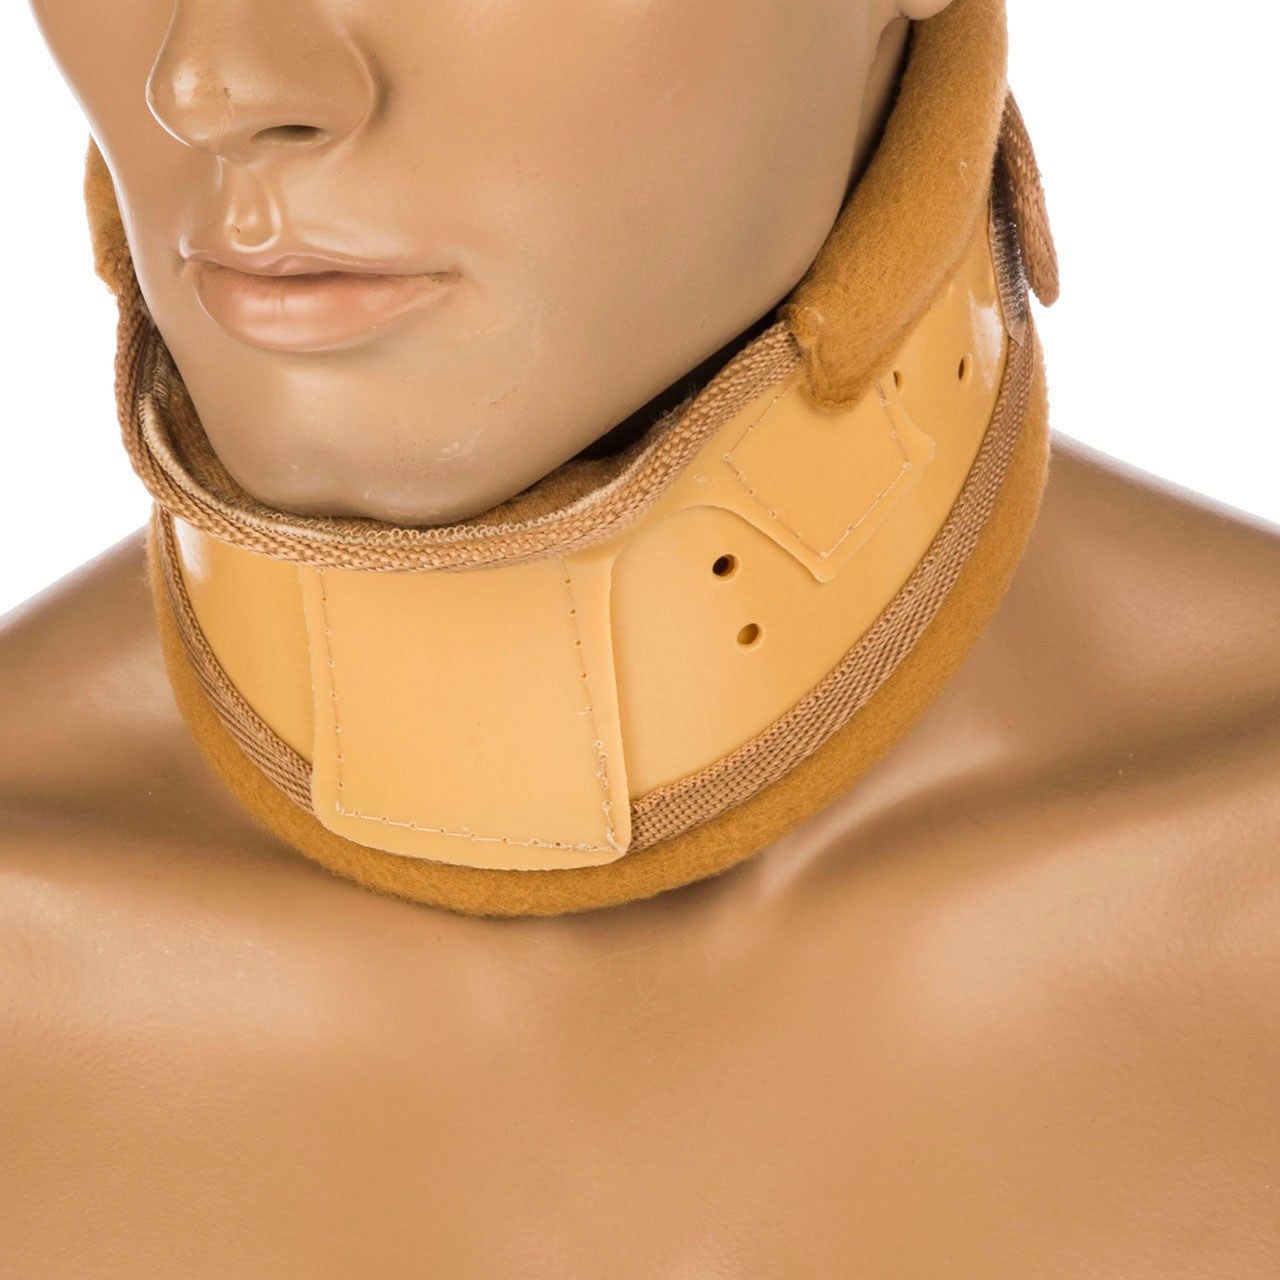 گردن بند طبی پاک سمن مدل Hard With Chain Pad سایز متوسط -  - 1